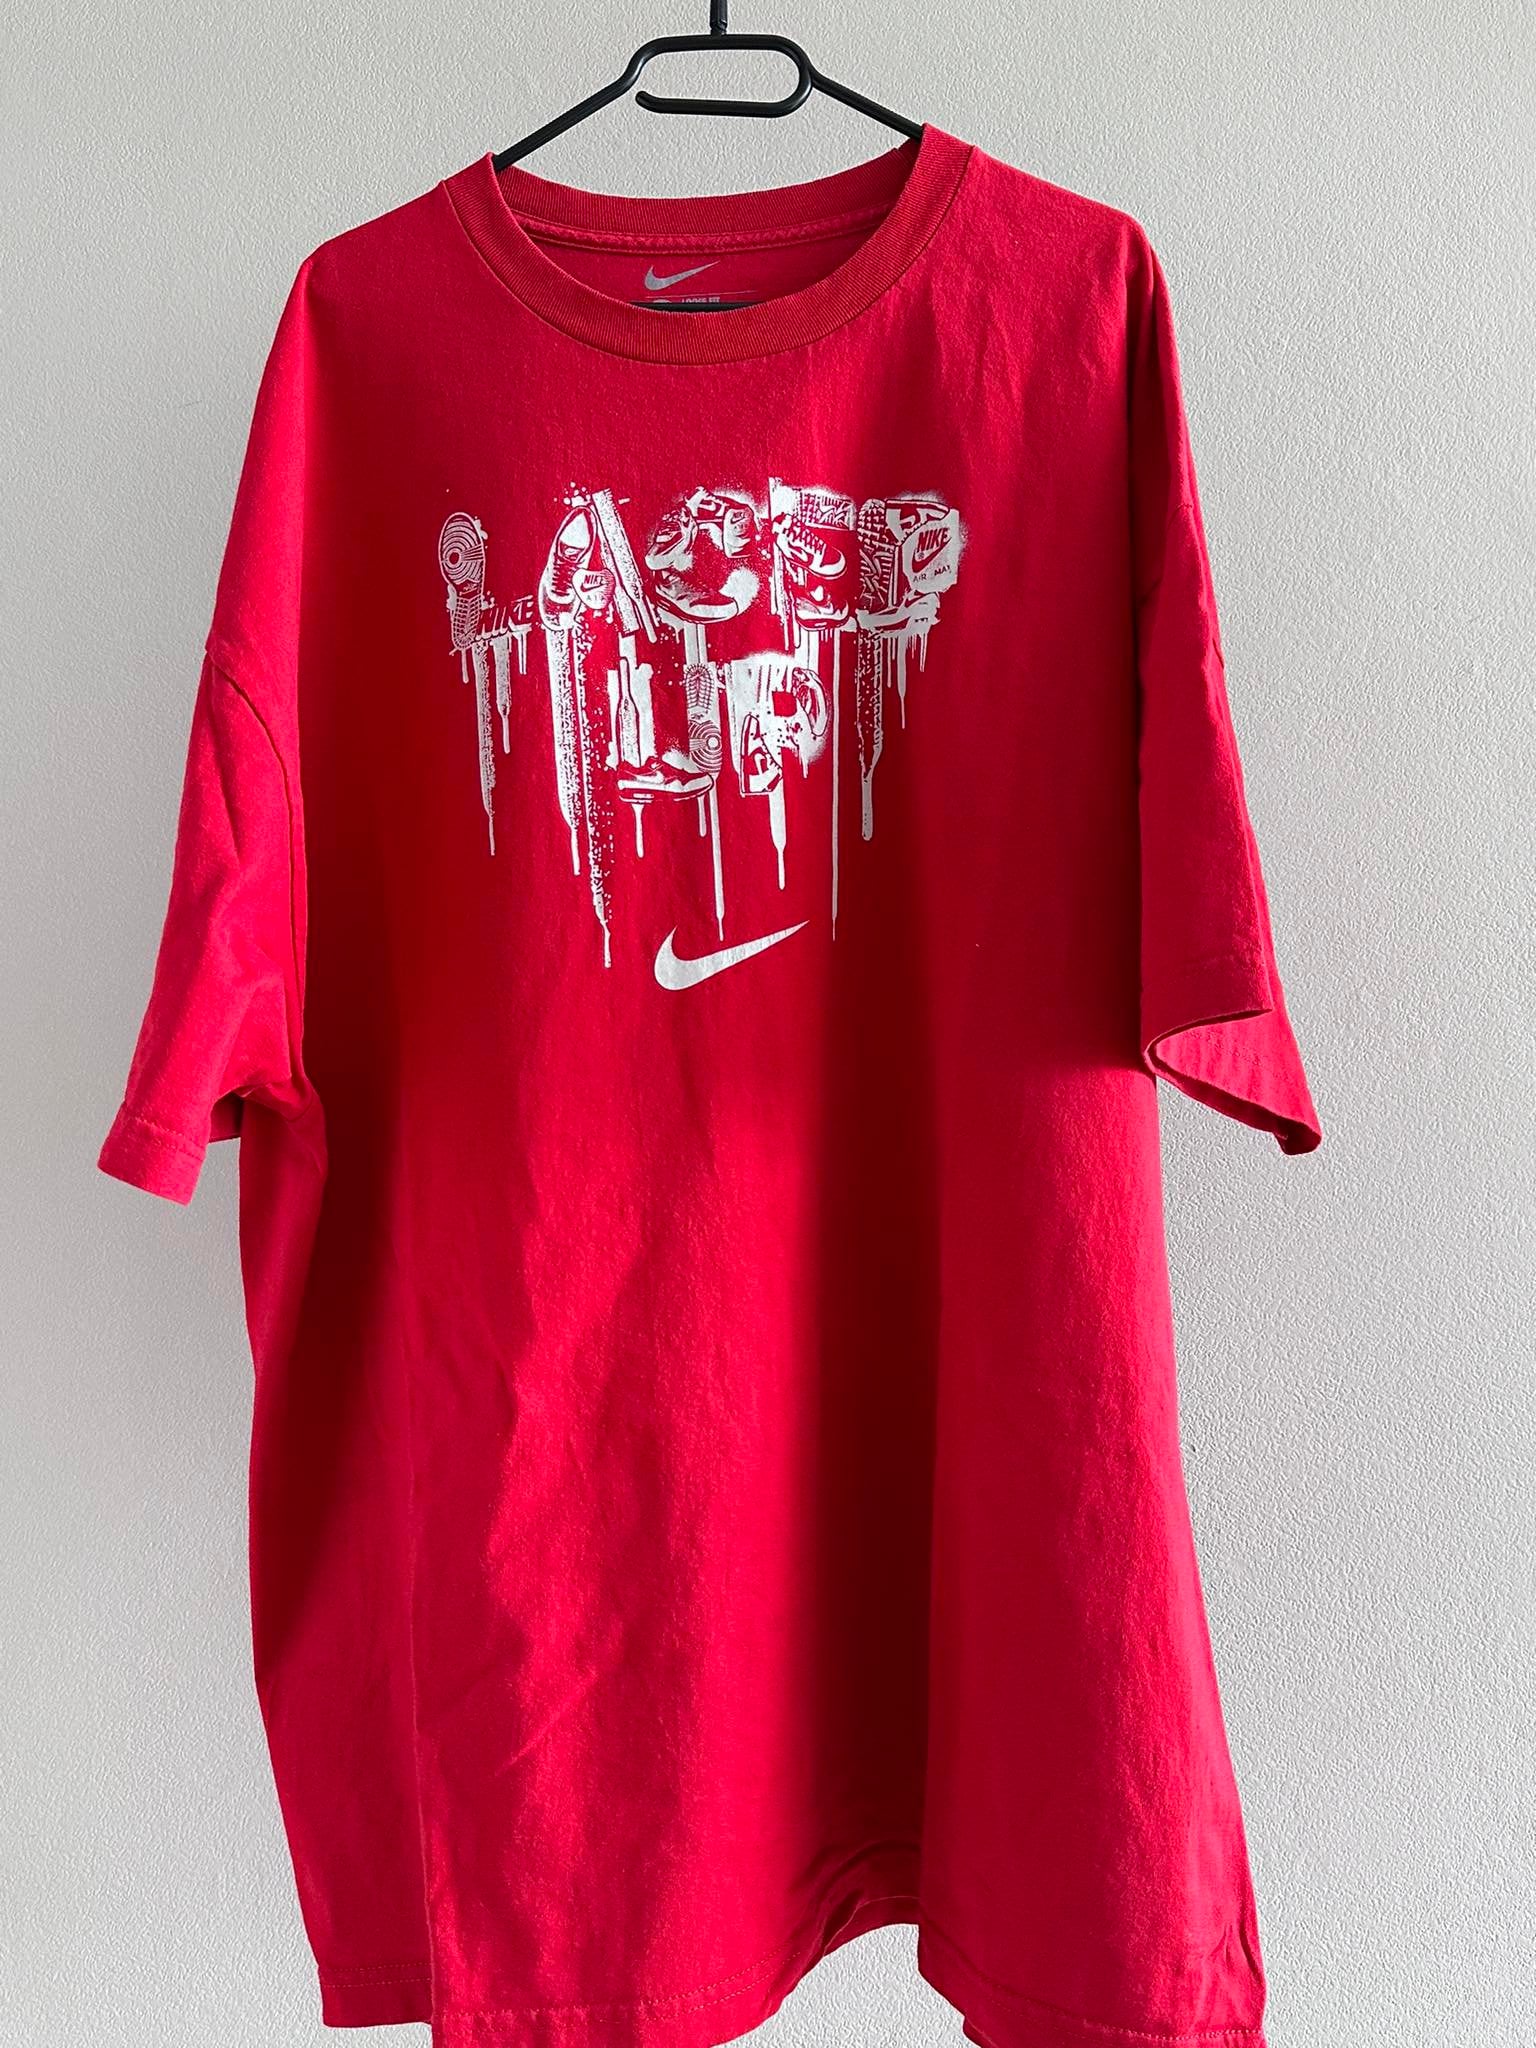 Nike peace love basketball Tshirt 3XL Clothing has - Depop